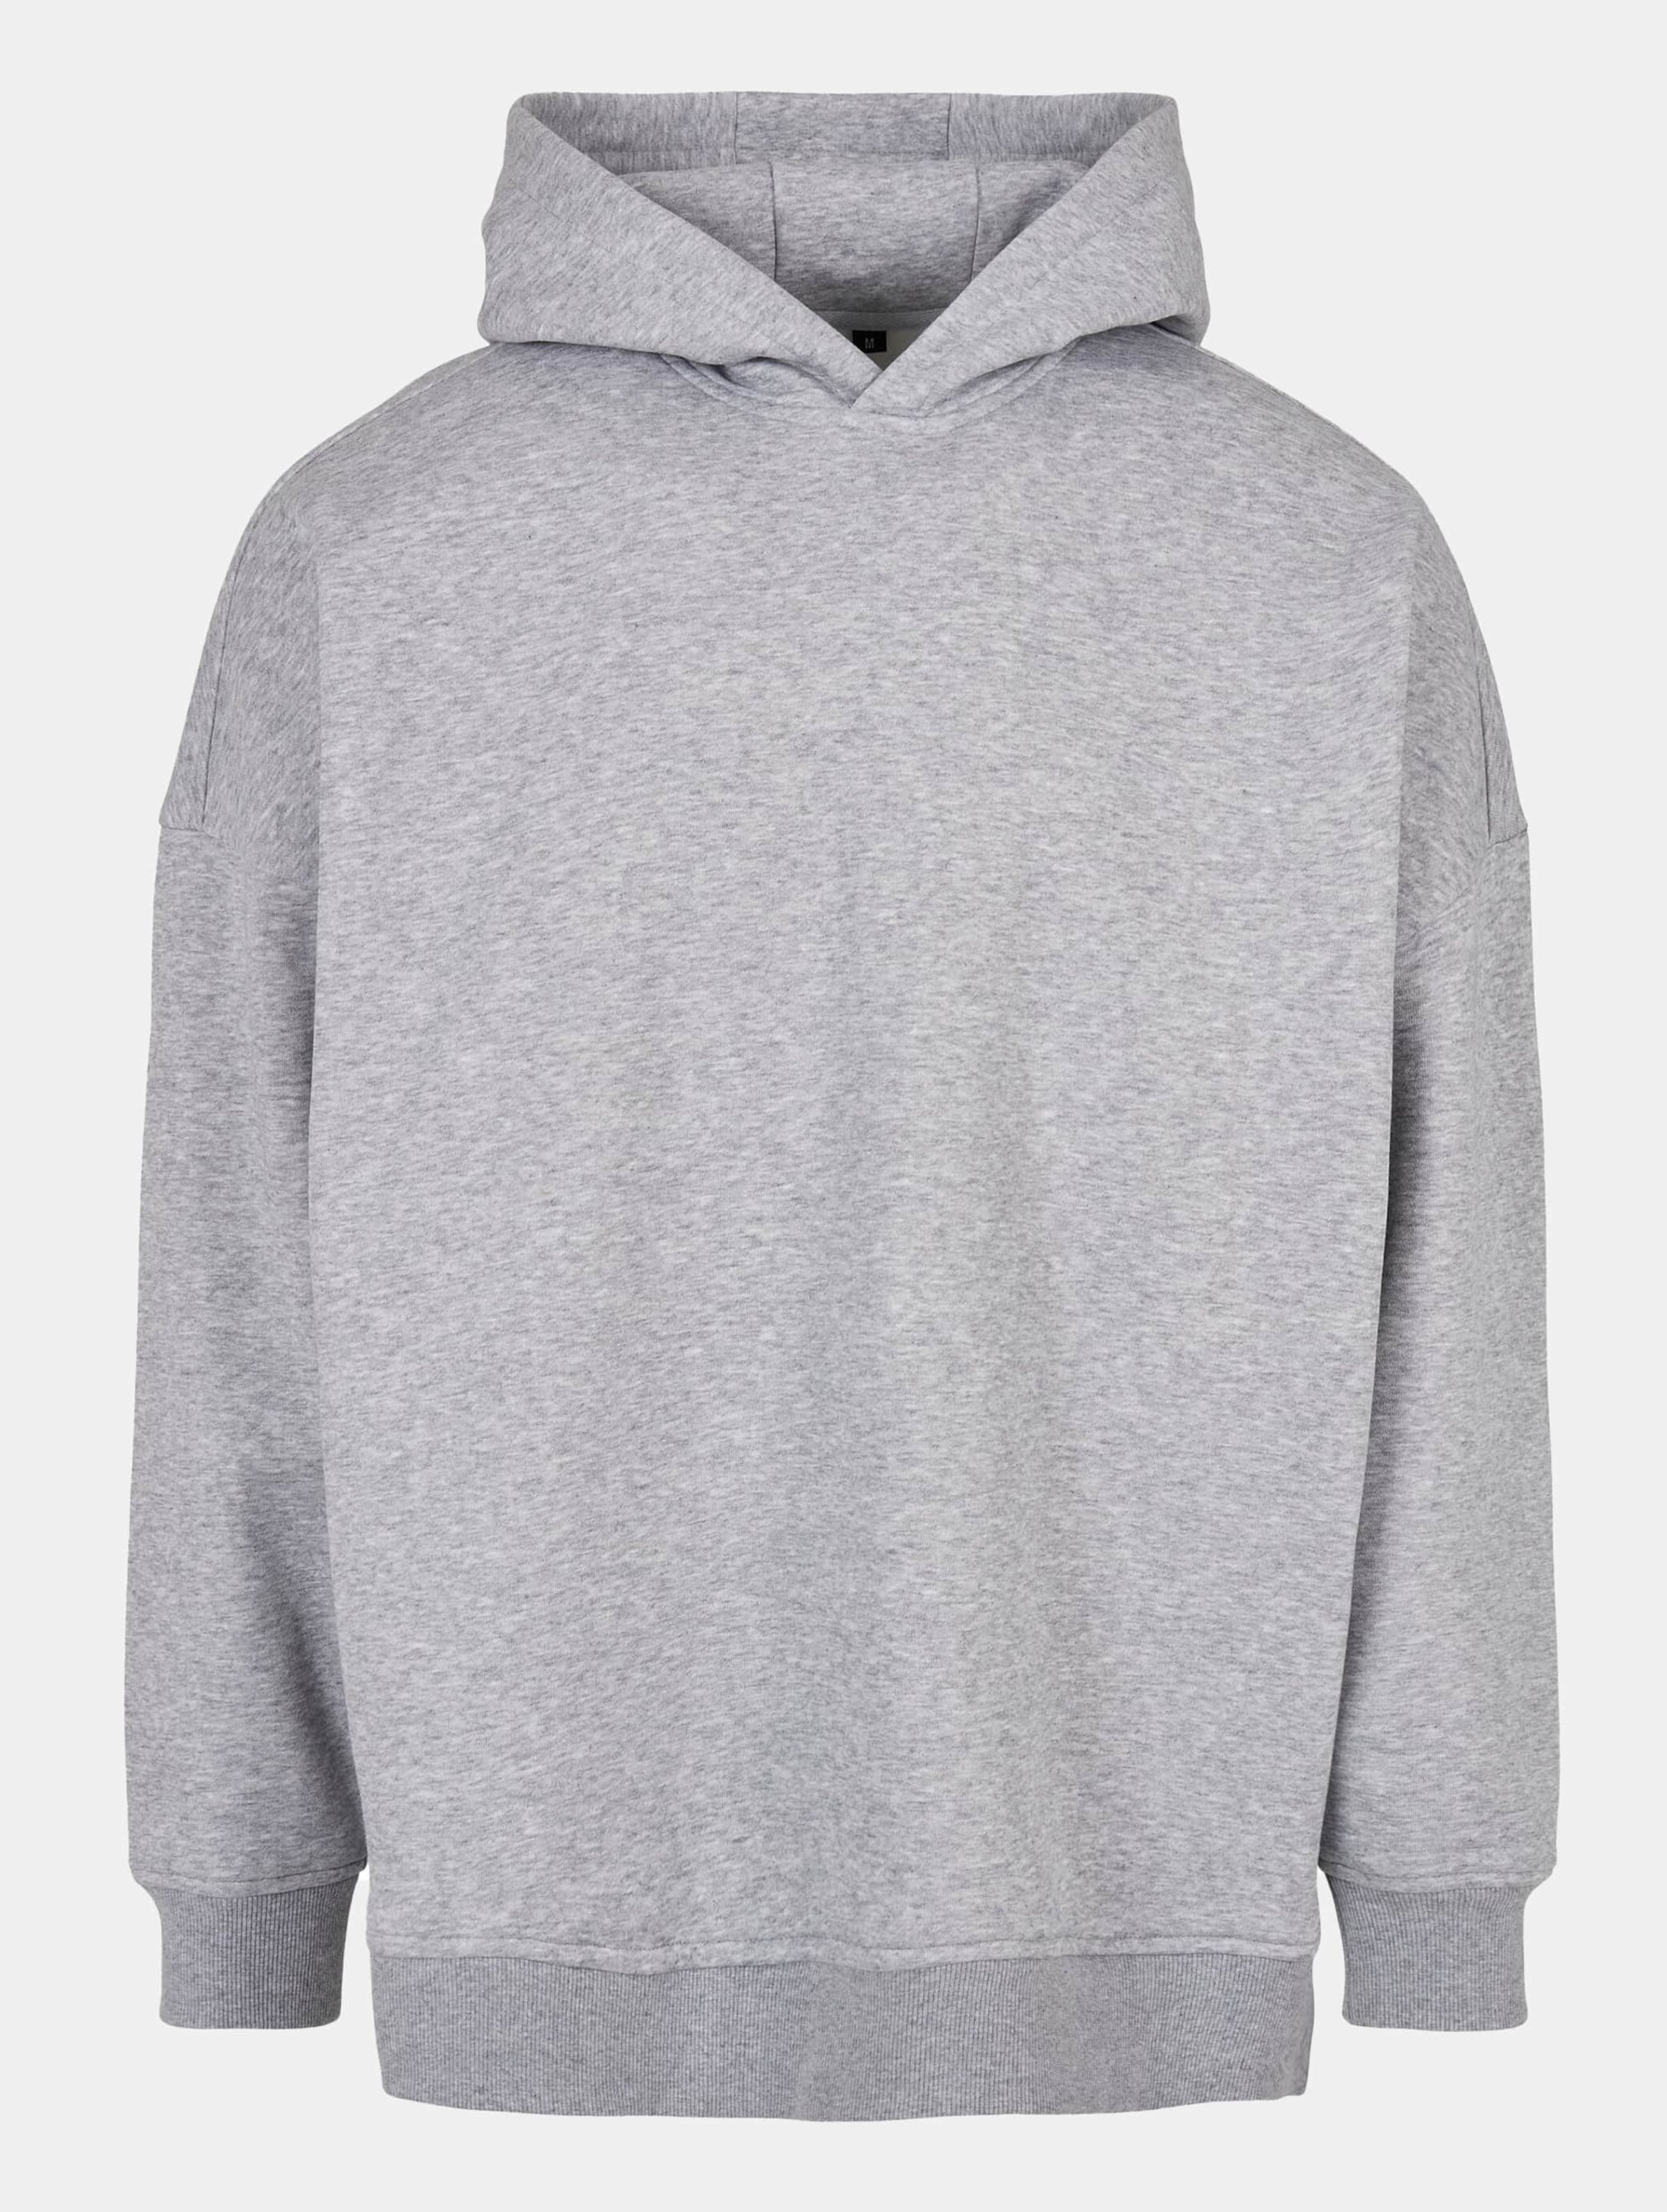 Build Your Brand Oversized Cut On Sweatshirt Met Capuchon Grijs XL Man